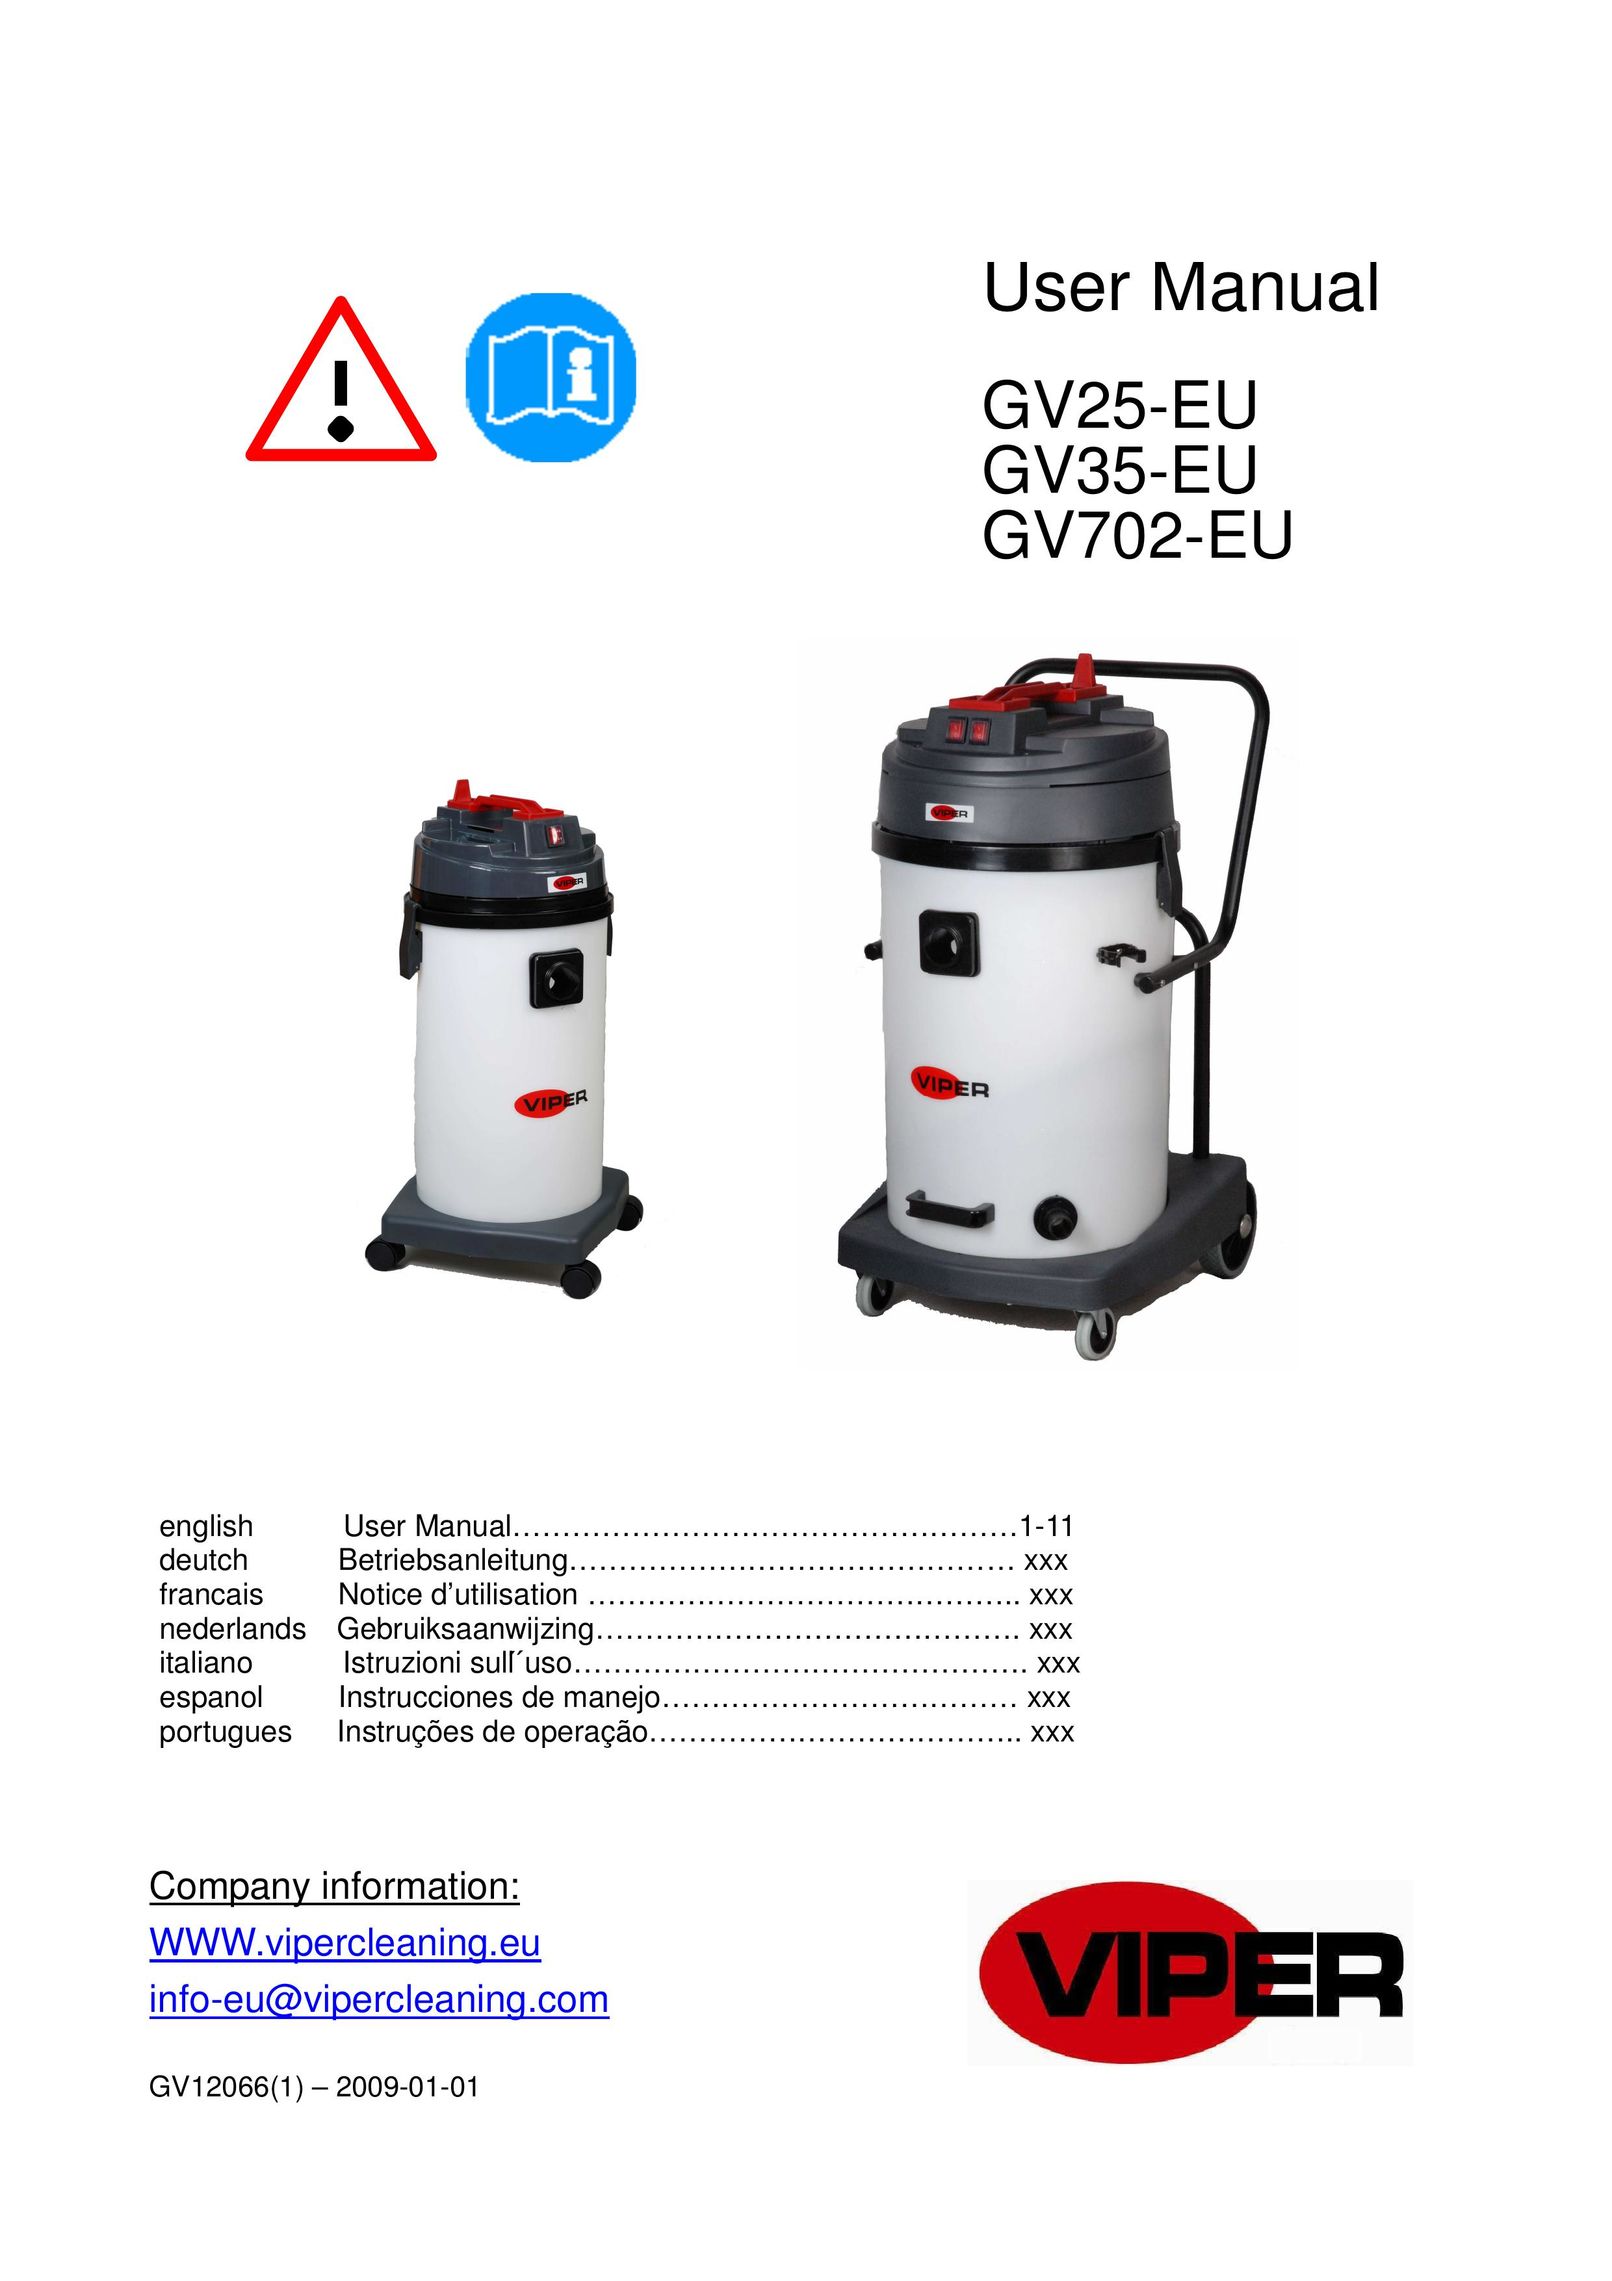 Viper GV25-EU Vacuum Cleaner User Manual